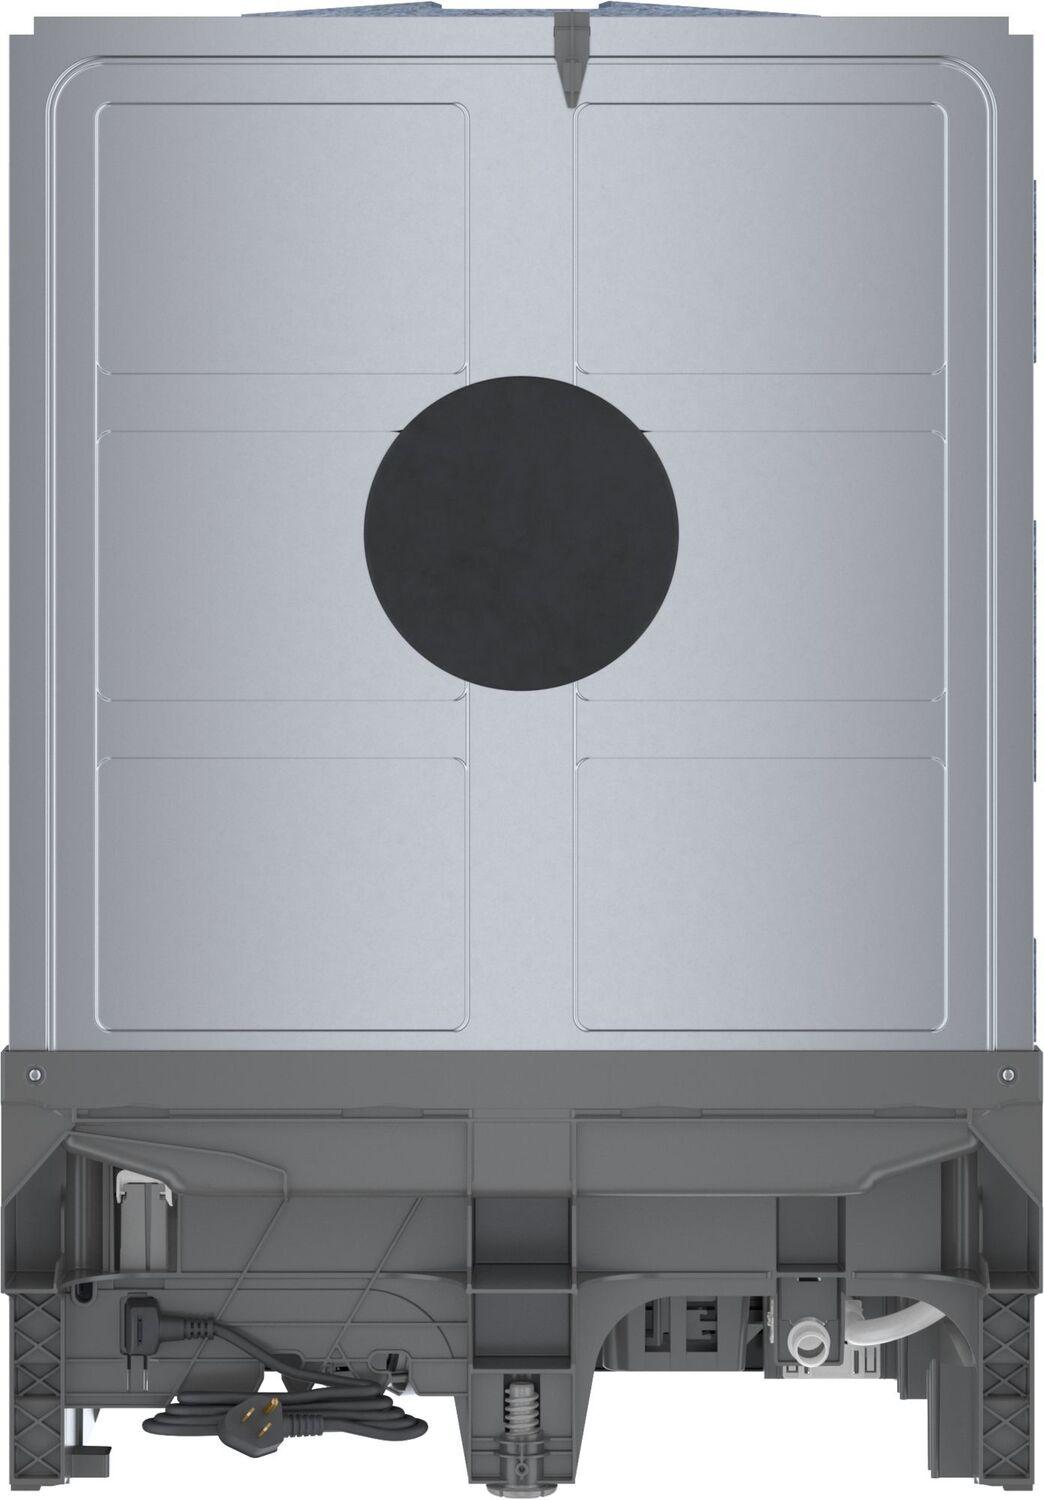 Bosch SHE4AEM6N 100 Plus Dishwasher 24" Black